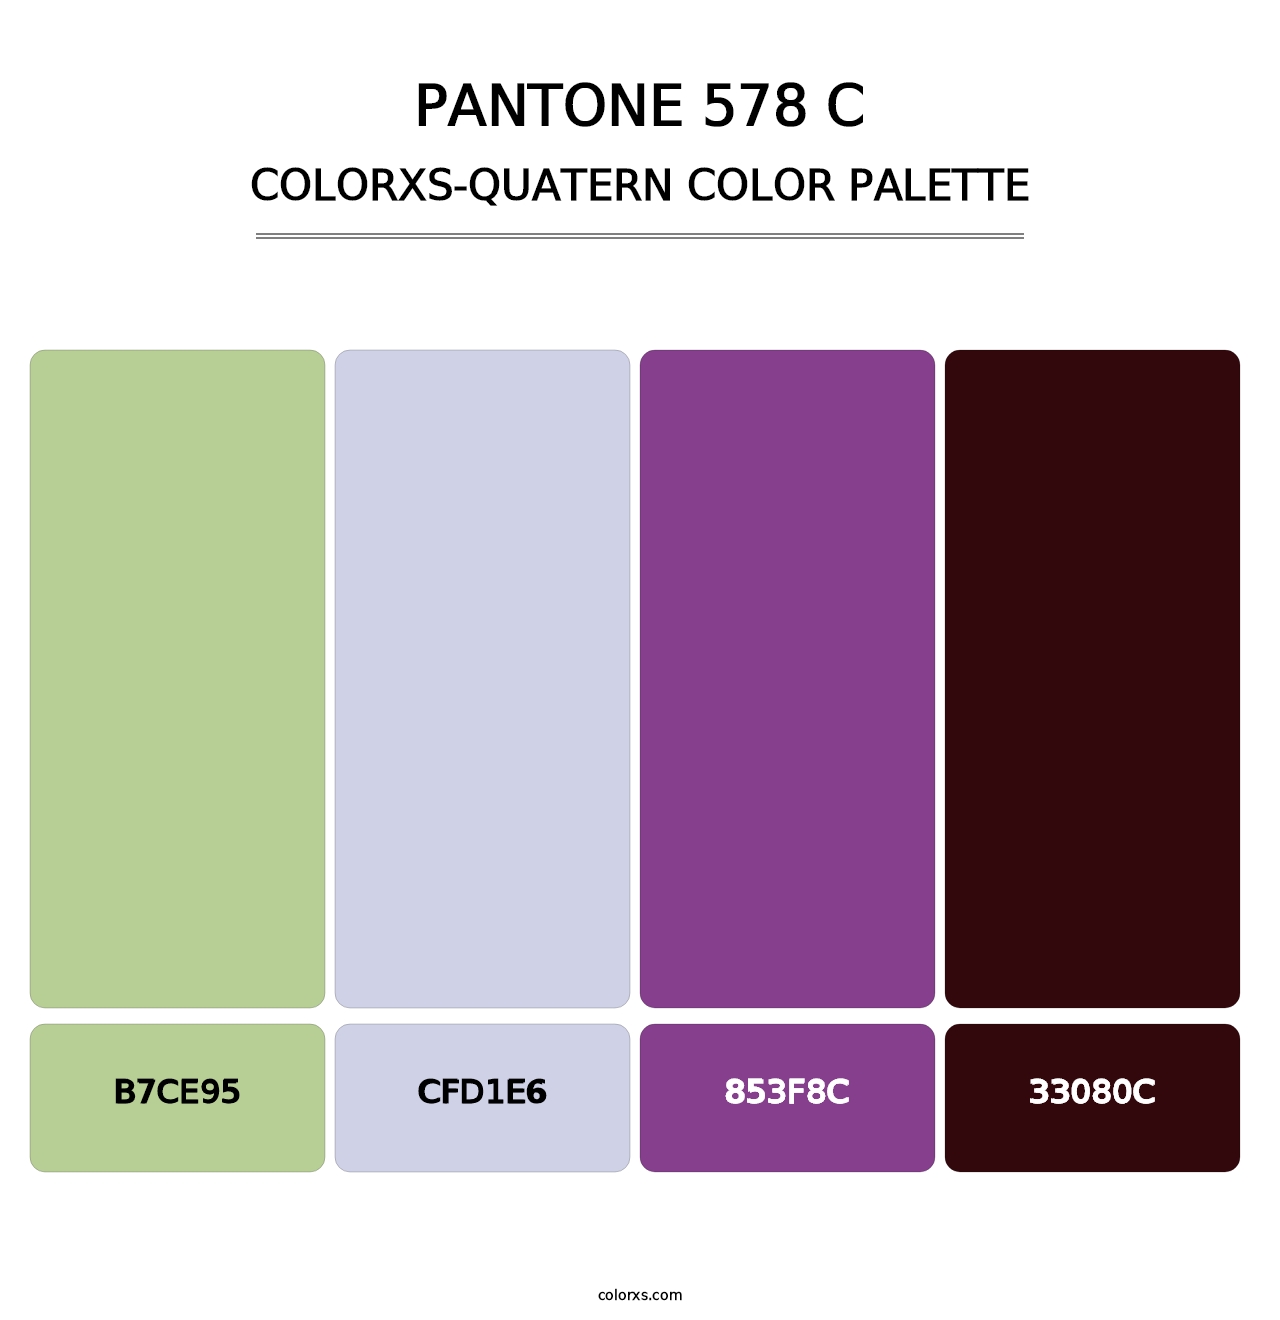 PANTONE 578 C - Colorxs Quatern Palette